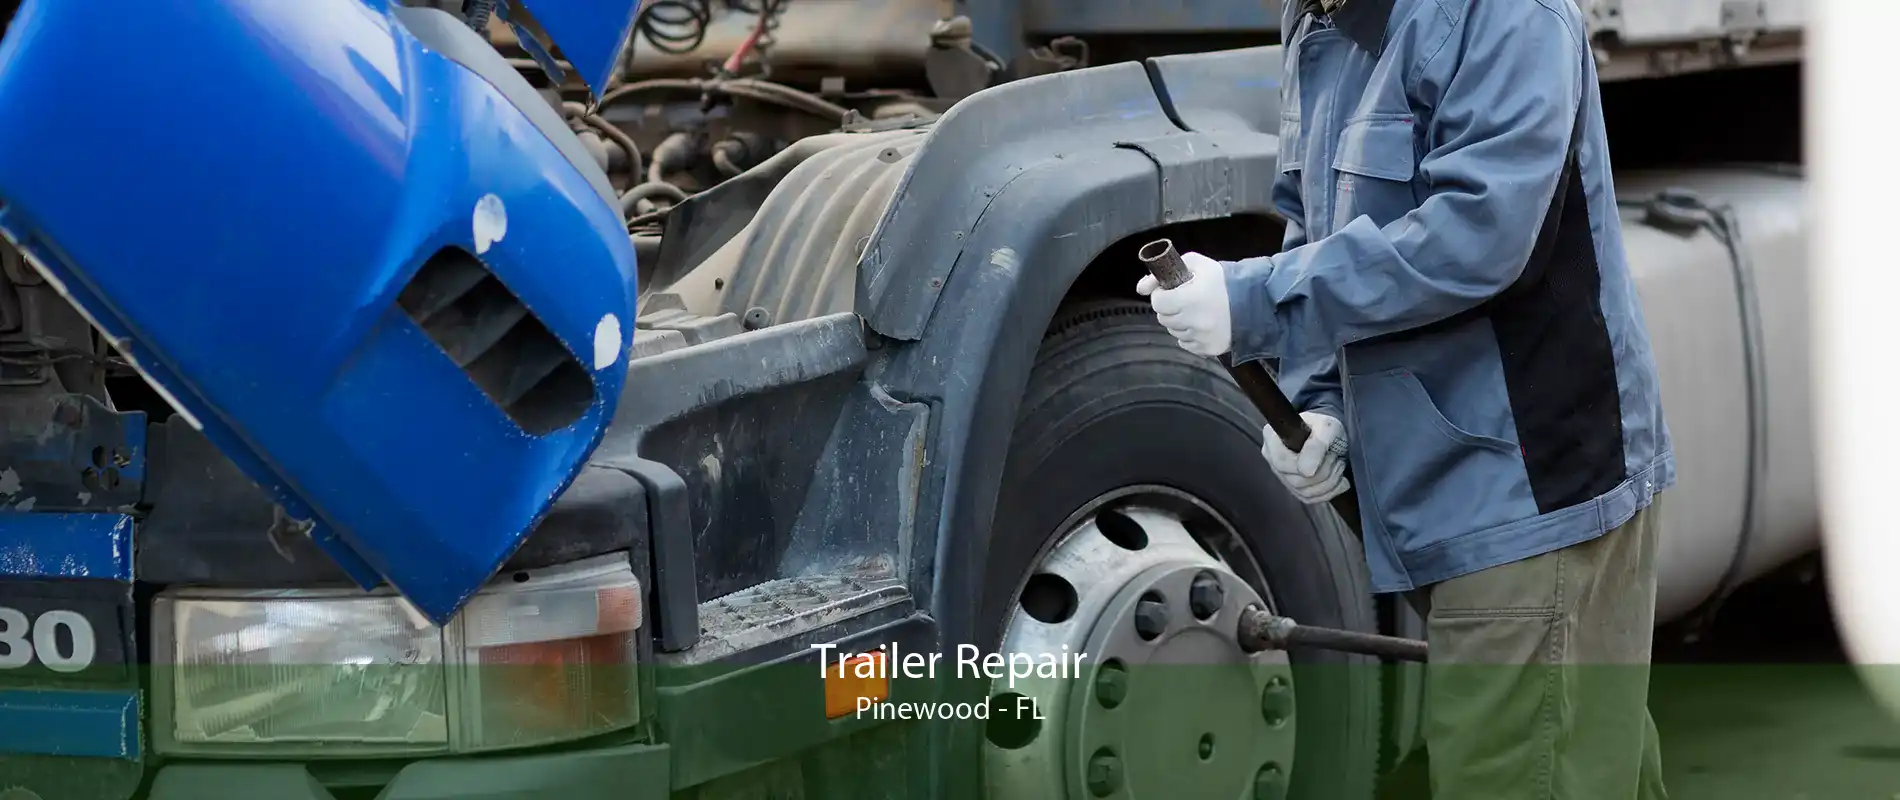 Trailer Repair Pinewood - FL